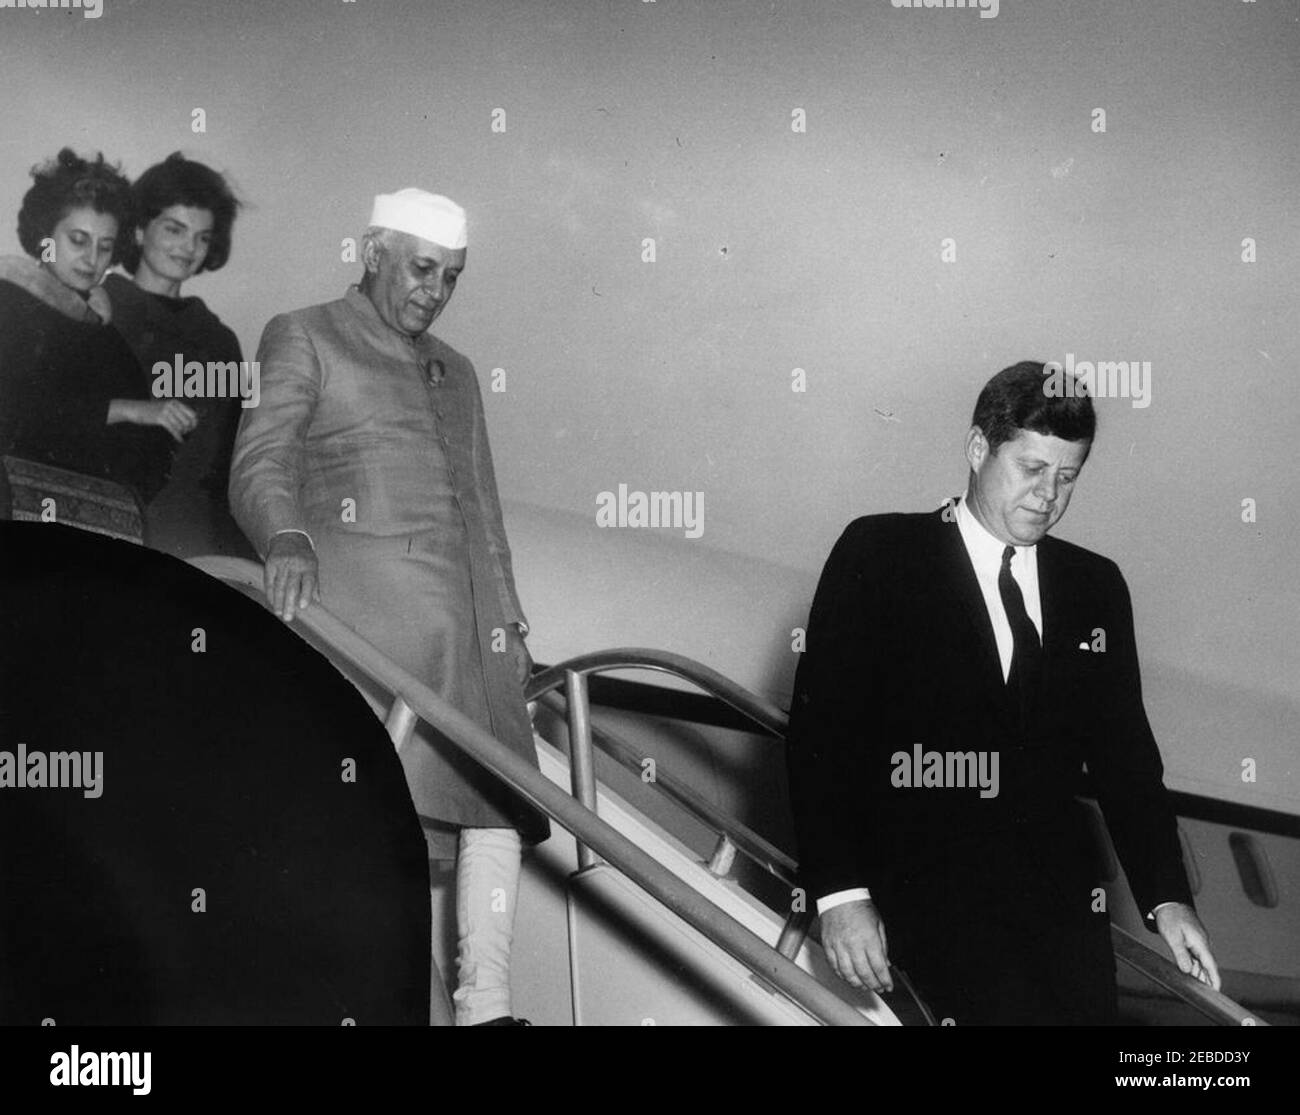 Ankunftszeremonie für Jawaharlal Nehru, Premierminister von Indien, 4:20pm Uhr. Präsident John F. Kennedy steigt die Treppe der Air Force One während der Ankunftszeremonien für Premierminister von Indien Jawaharlal Nehru herab. Premierminister Nehru, seine Tochter Indira Gandhi und First Lady Jacqueline Kennedy folgen. Andrews Air Force Base, Maryland. Stockfoto